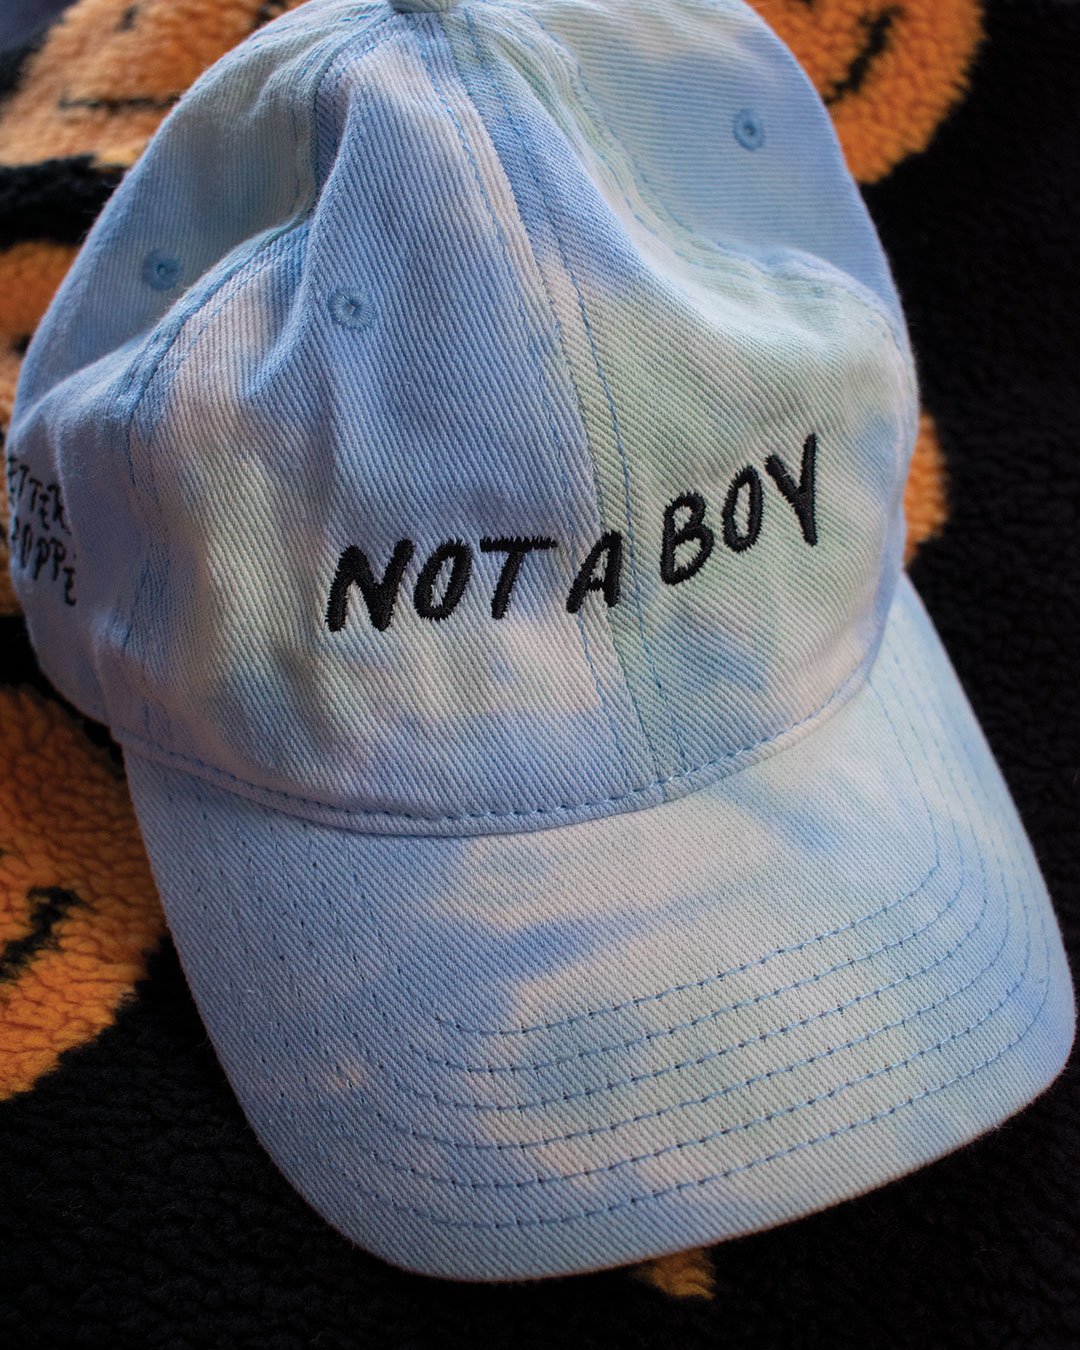 Tie-Dye Not A Girl/Boy